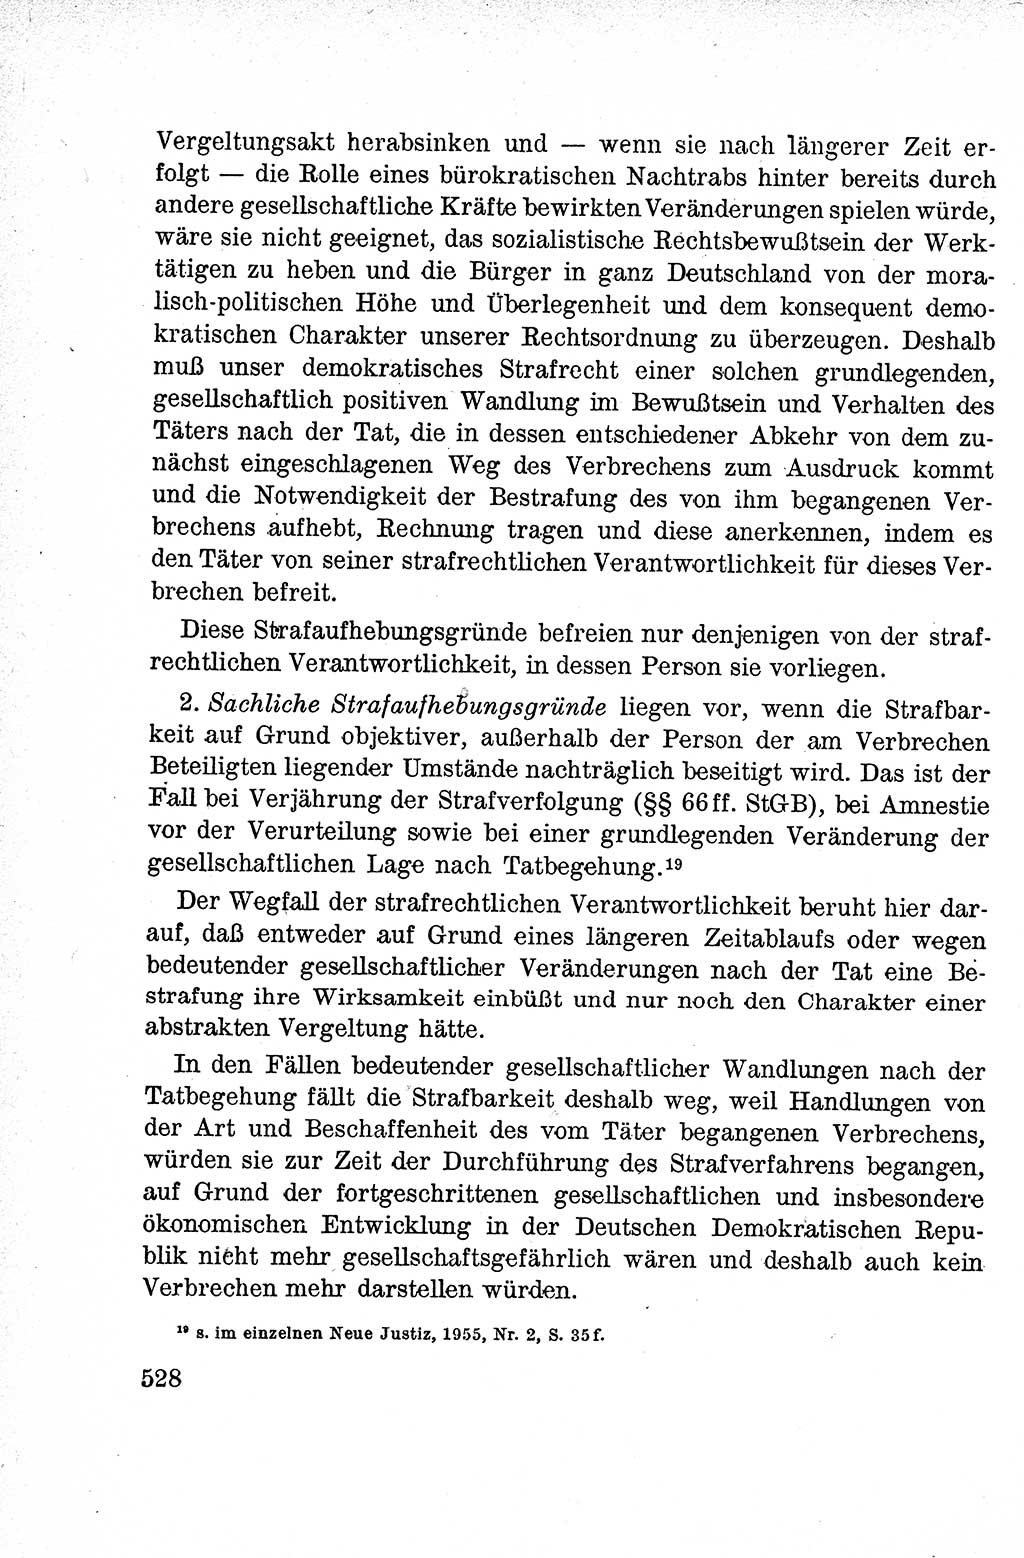 Lehrbuch des Strafrechts der Deutschen Demokratischen Republik (DDR), Allgemeiner Teil 1959, Seite 528 (Lb. Strafr. DDR AT 1959, S. 528)